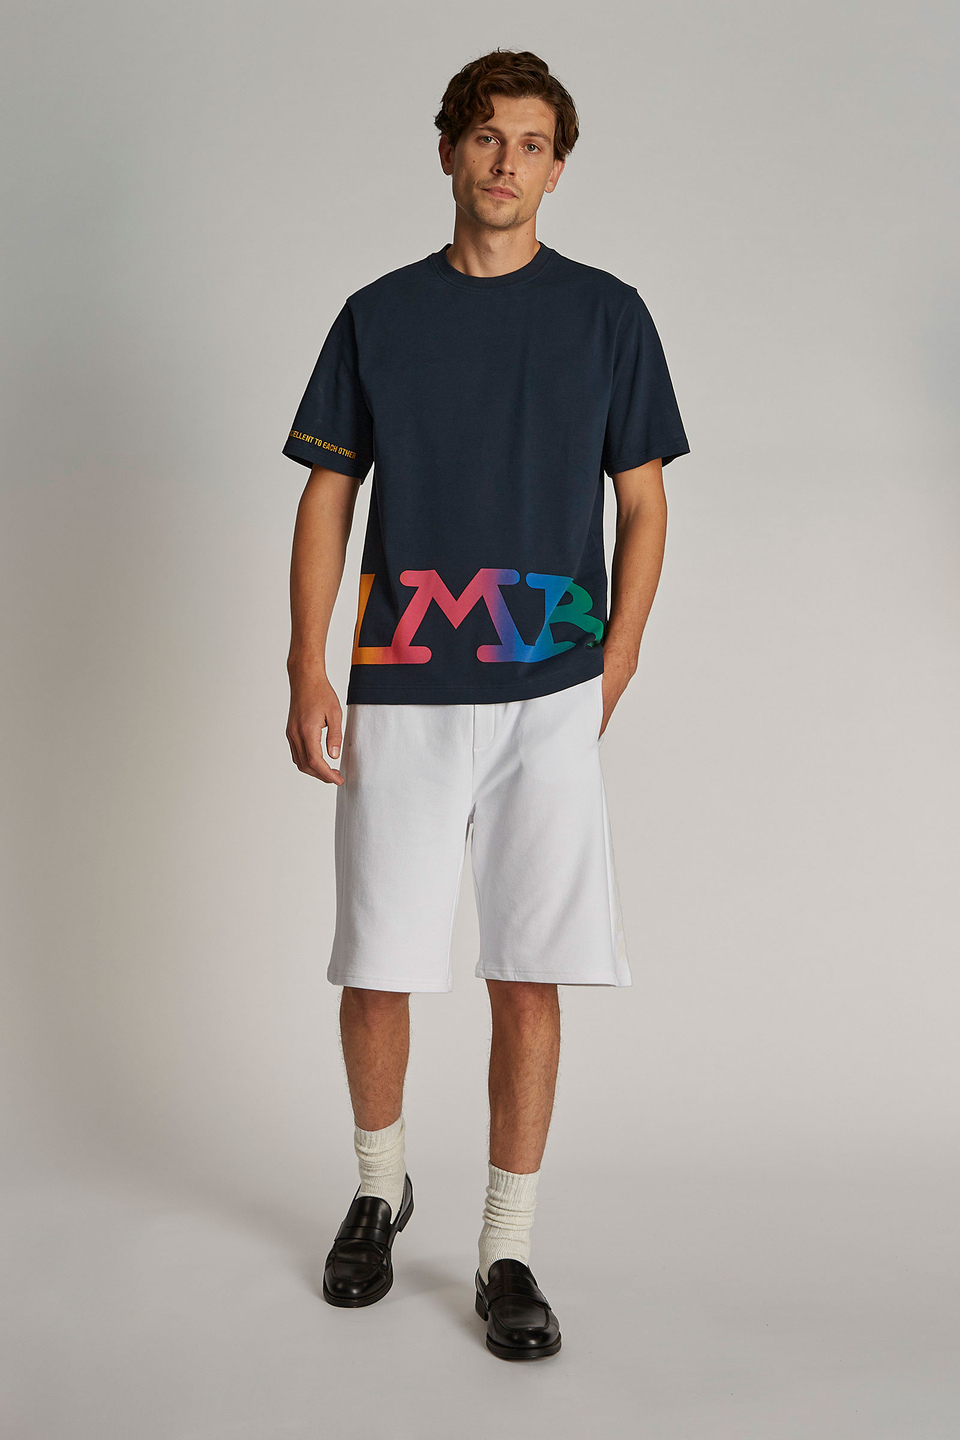 Men's oversized short-sleeved T-shirt | La Martina - Official Online Shop